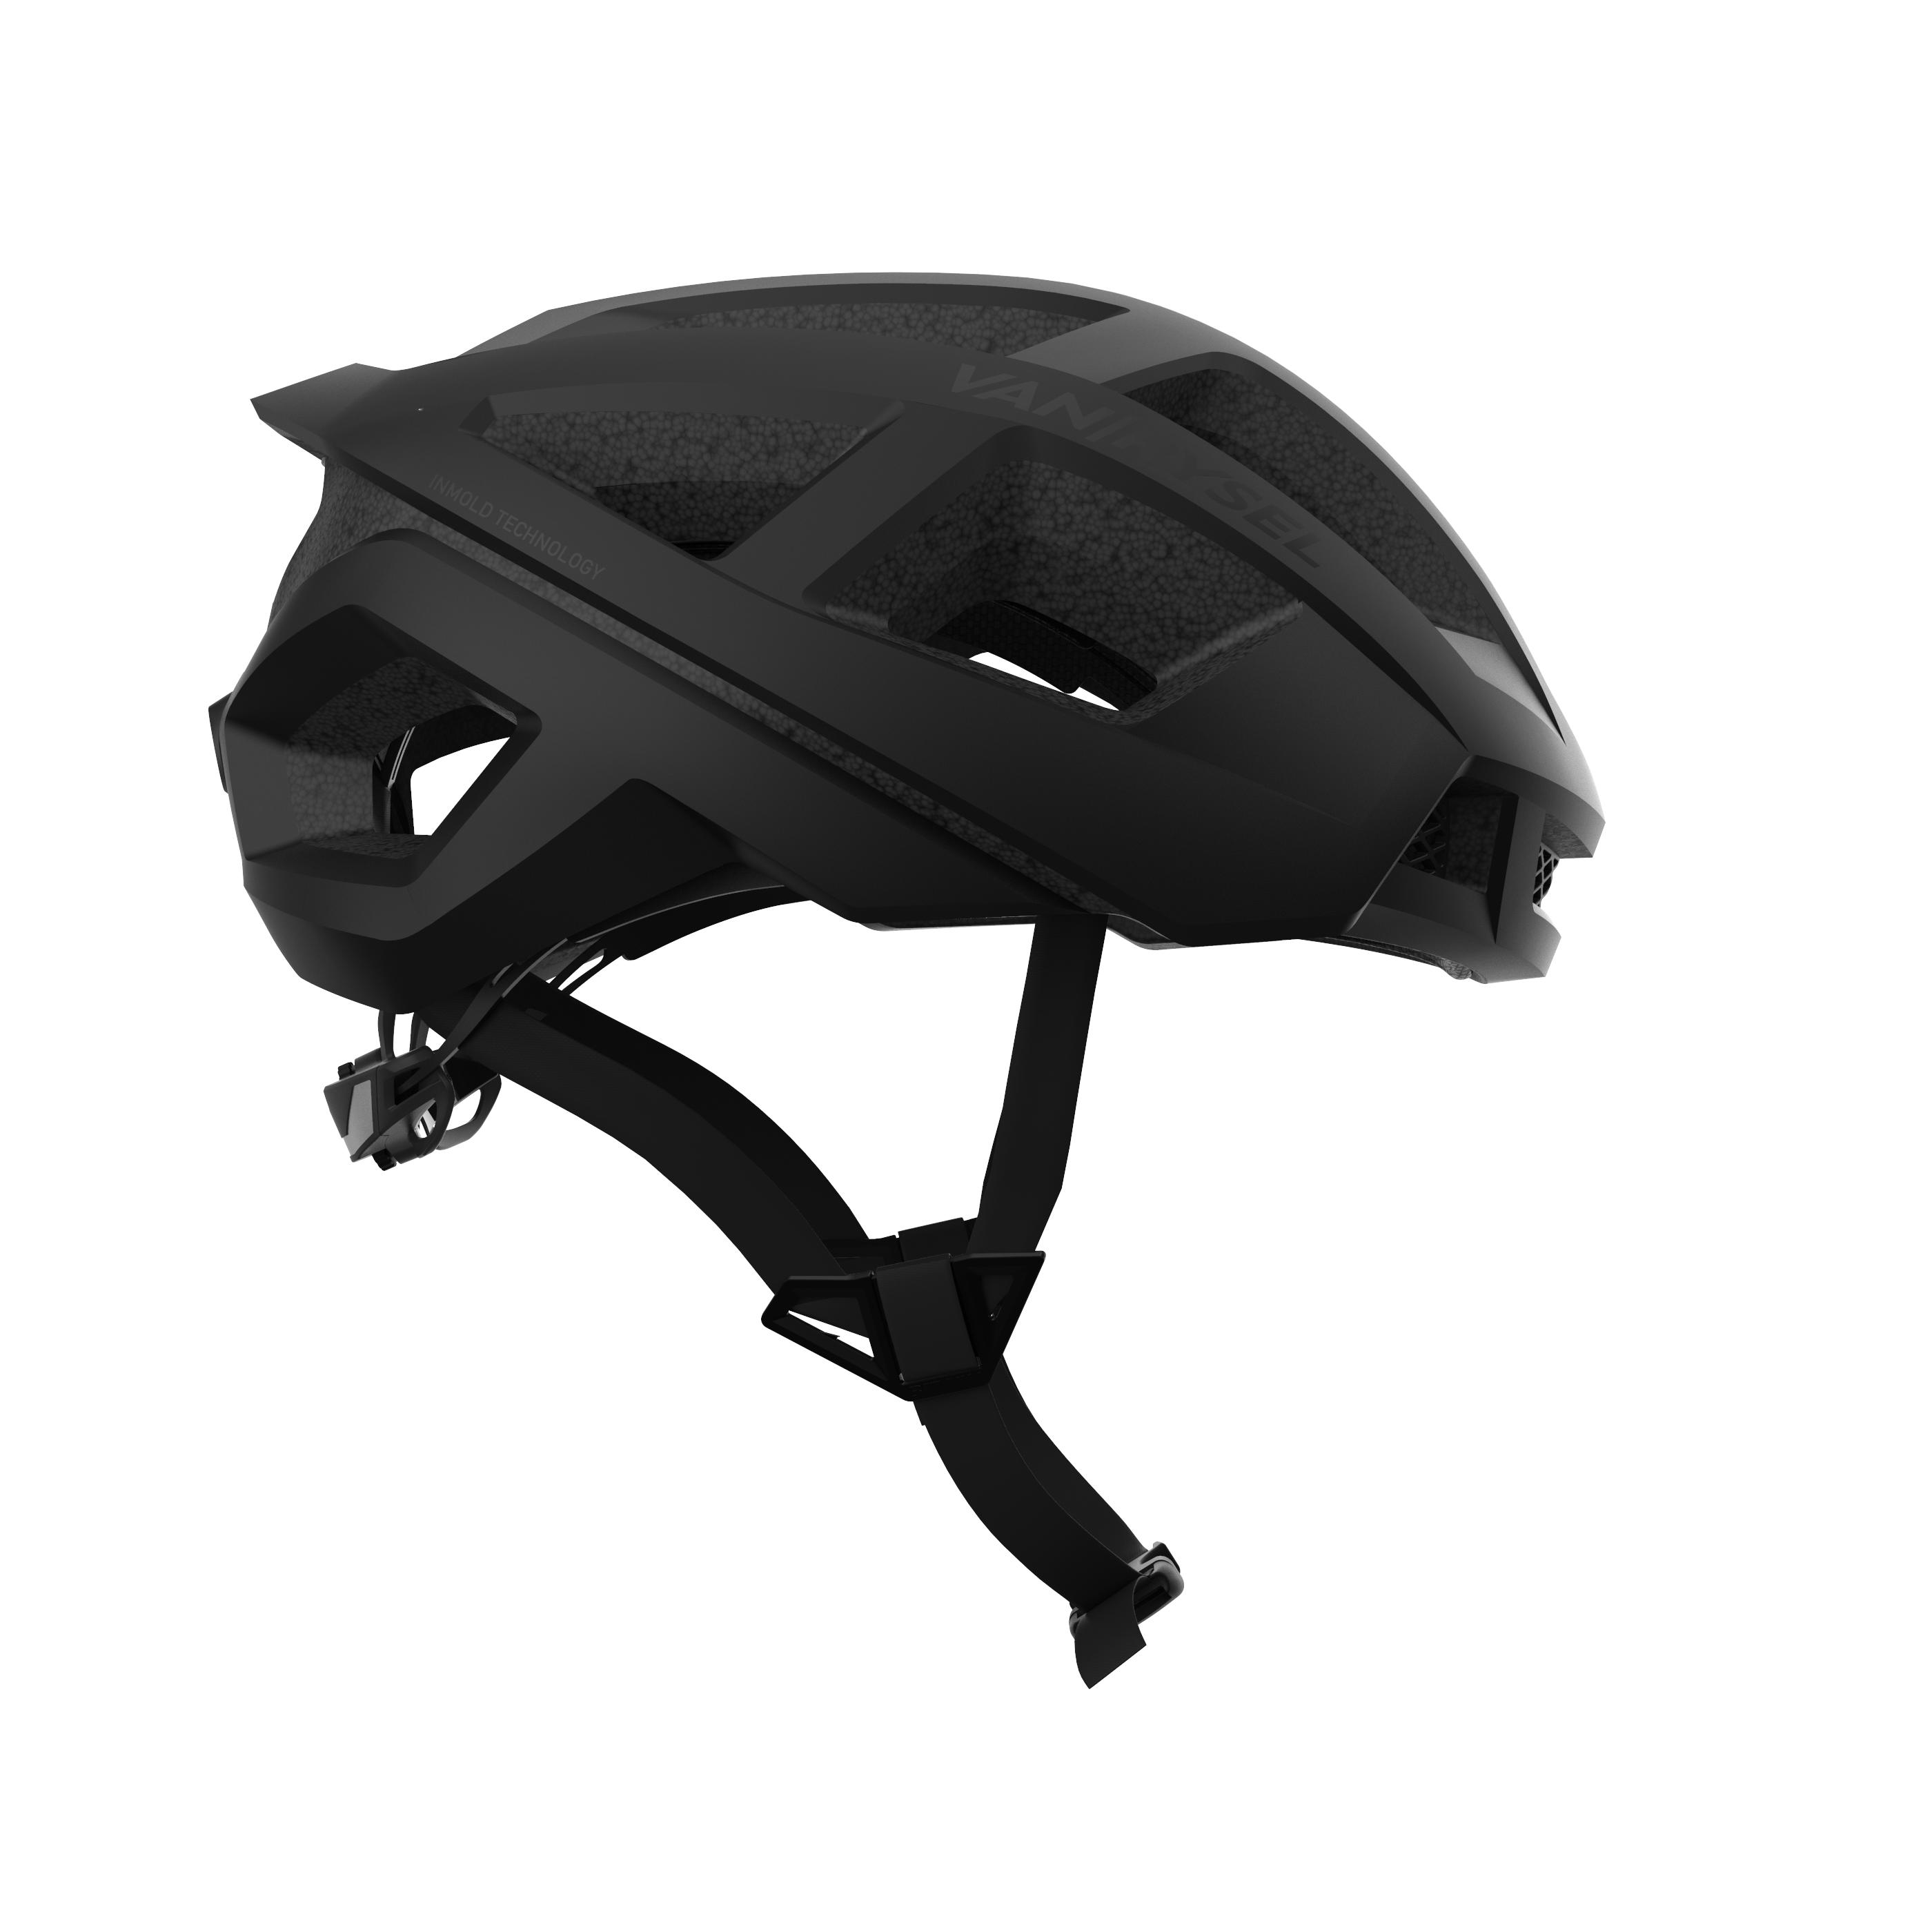 Racer Road Cycling Helmet - Black 3/7